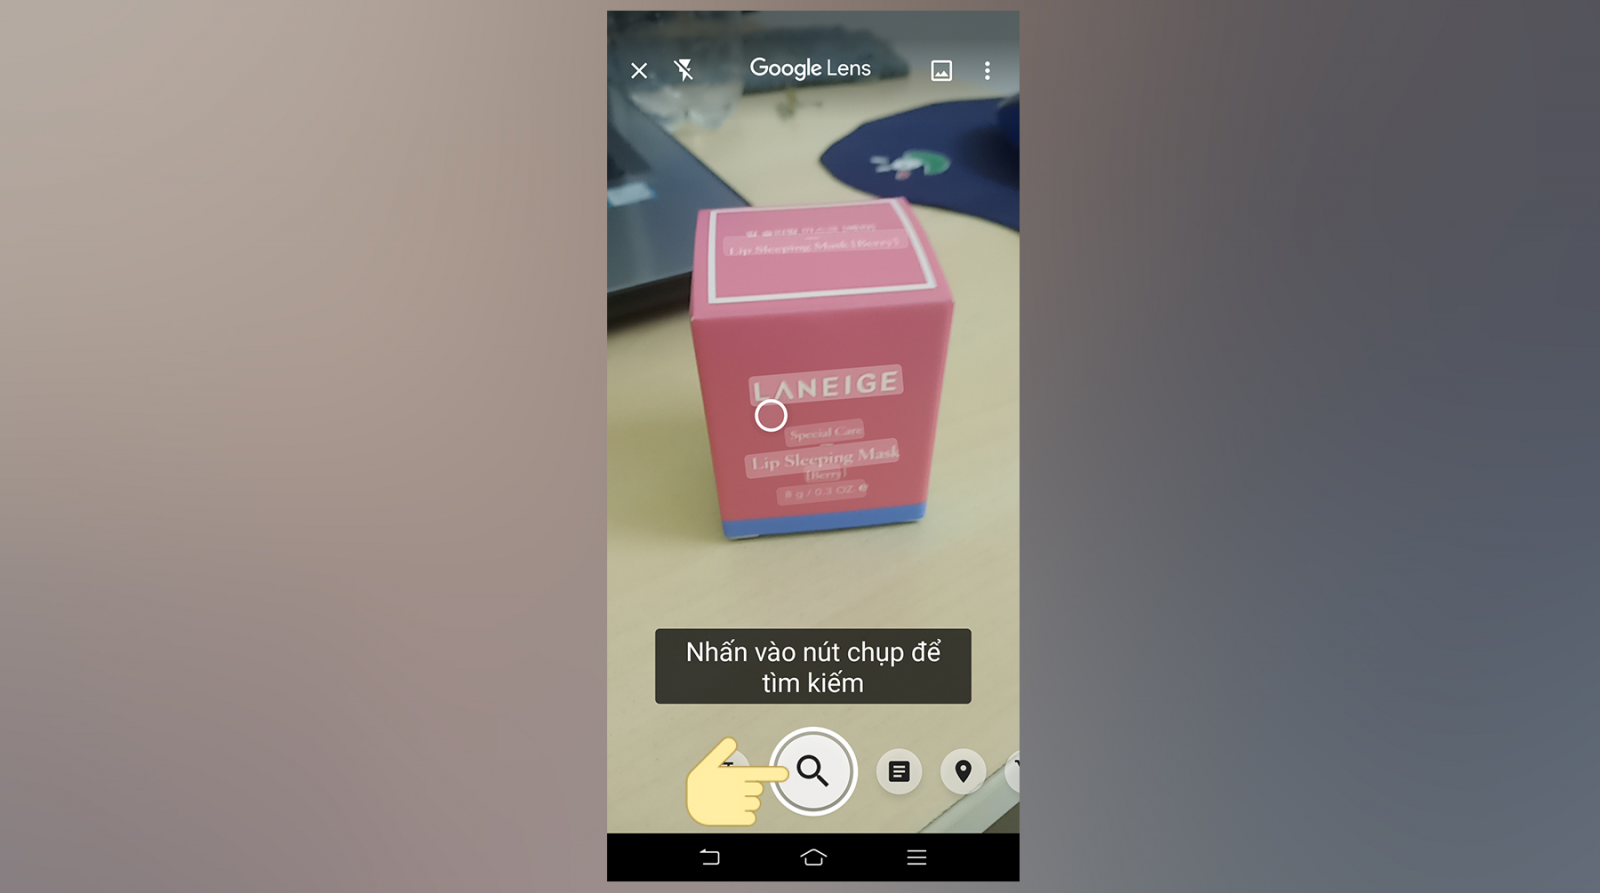 Google Ống Kính là 1 trong dụng cụ giúp cho bạn mò mẫm kiếm vấn đề hình hình họa nhanh gọn bên trên điện thoại cảm ứng thông minh Android